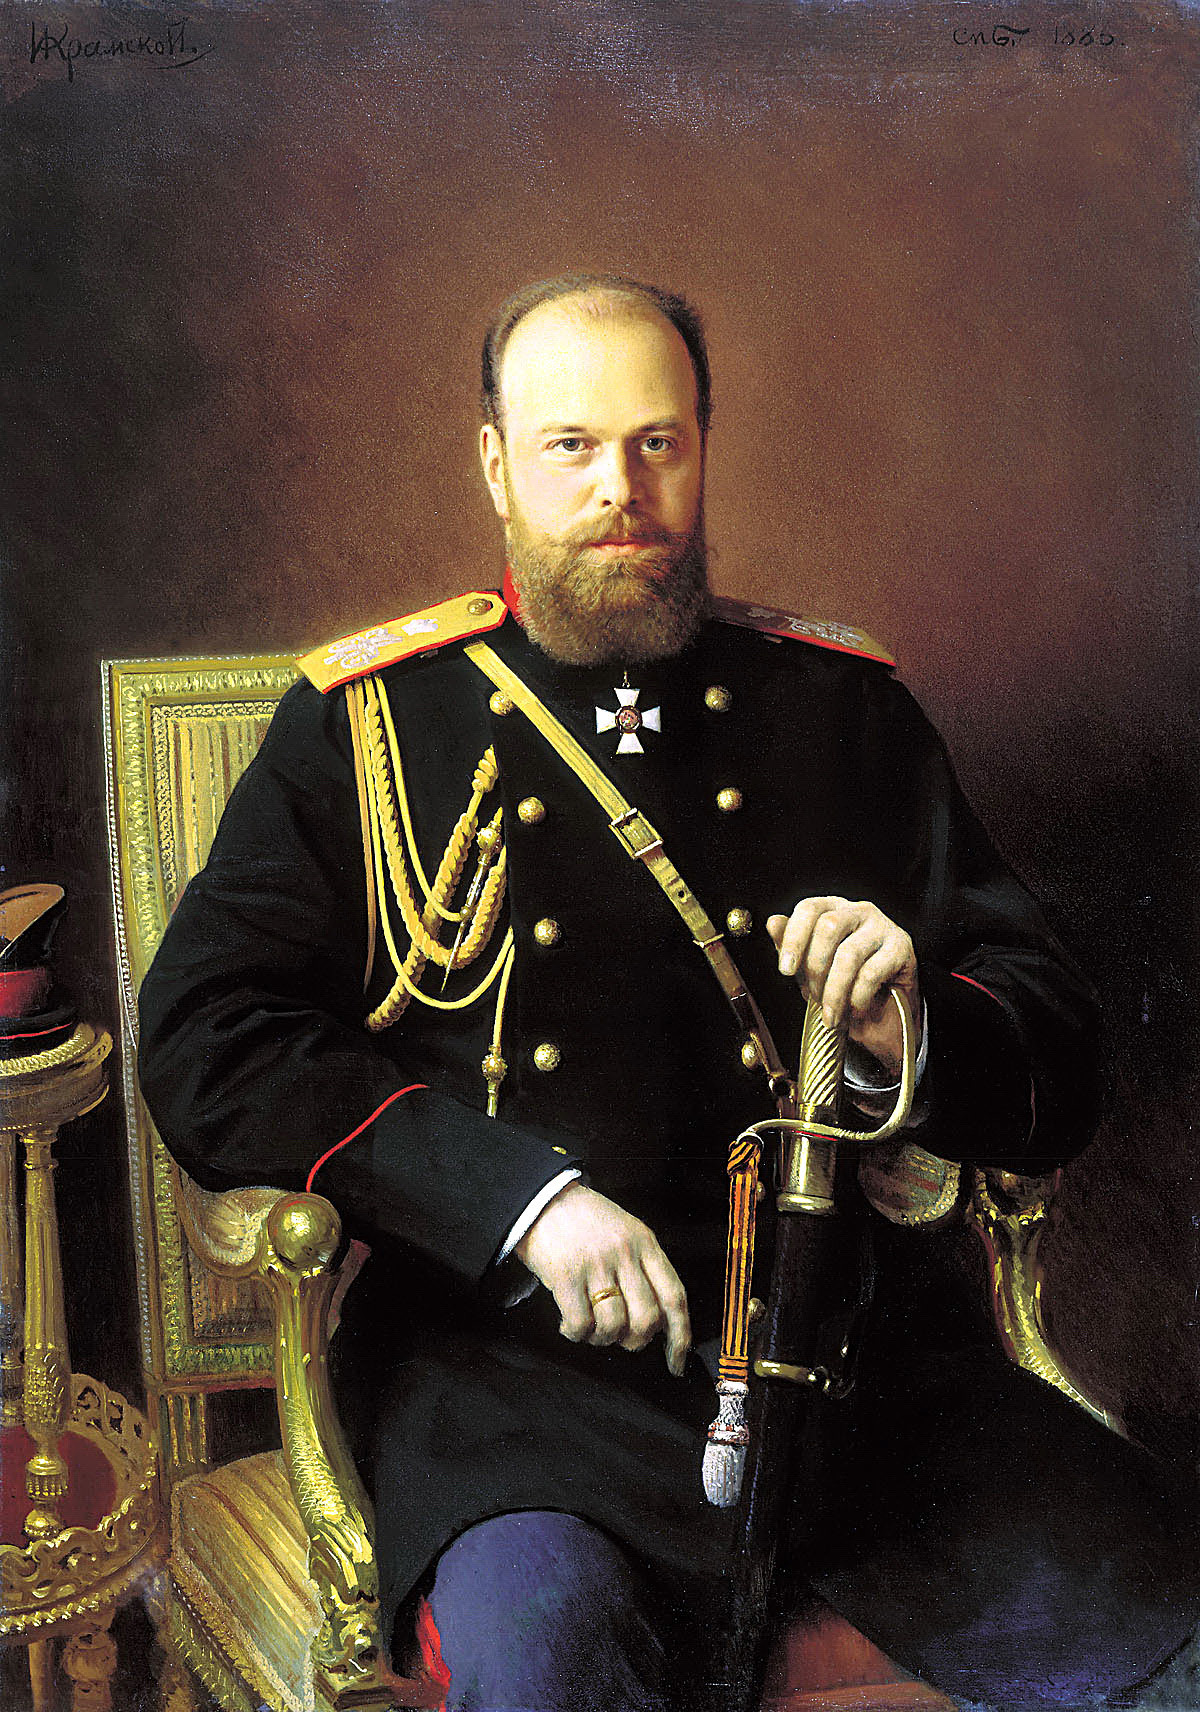 Retrato de Aleksandr 3° por Ivan Kramskoi.